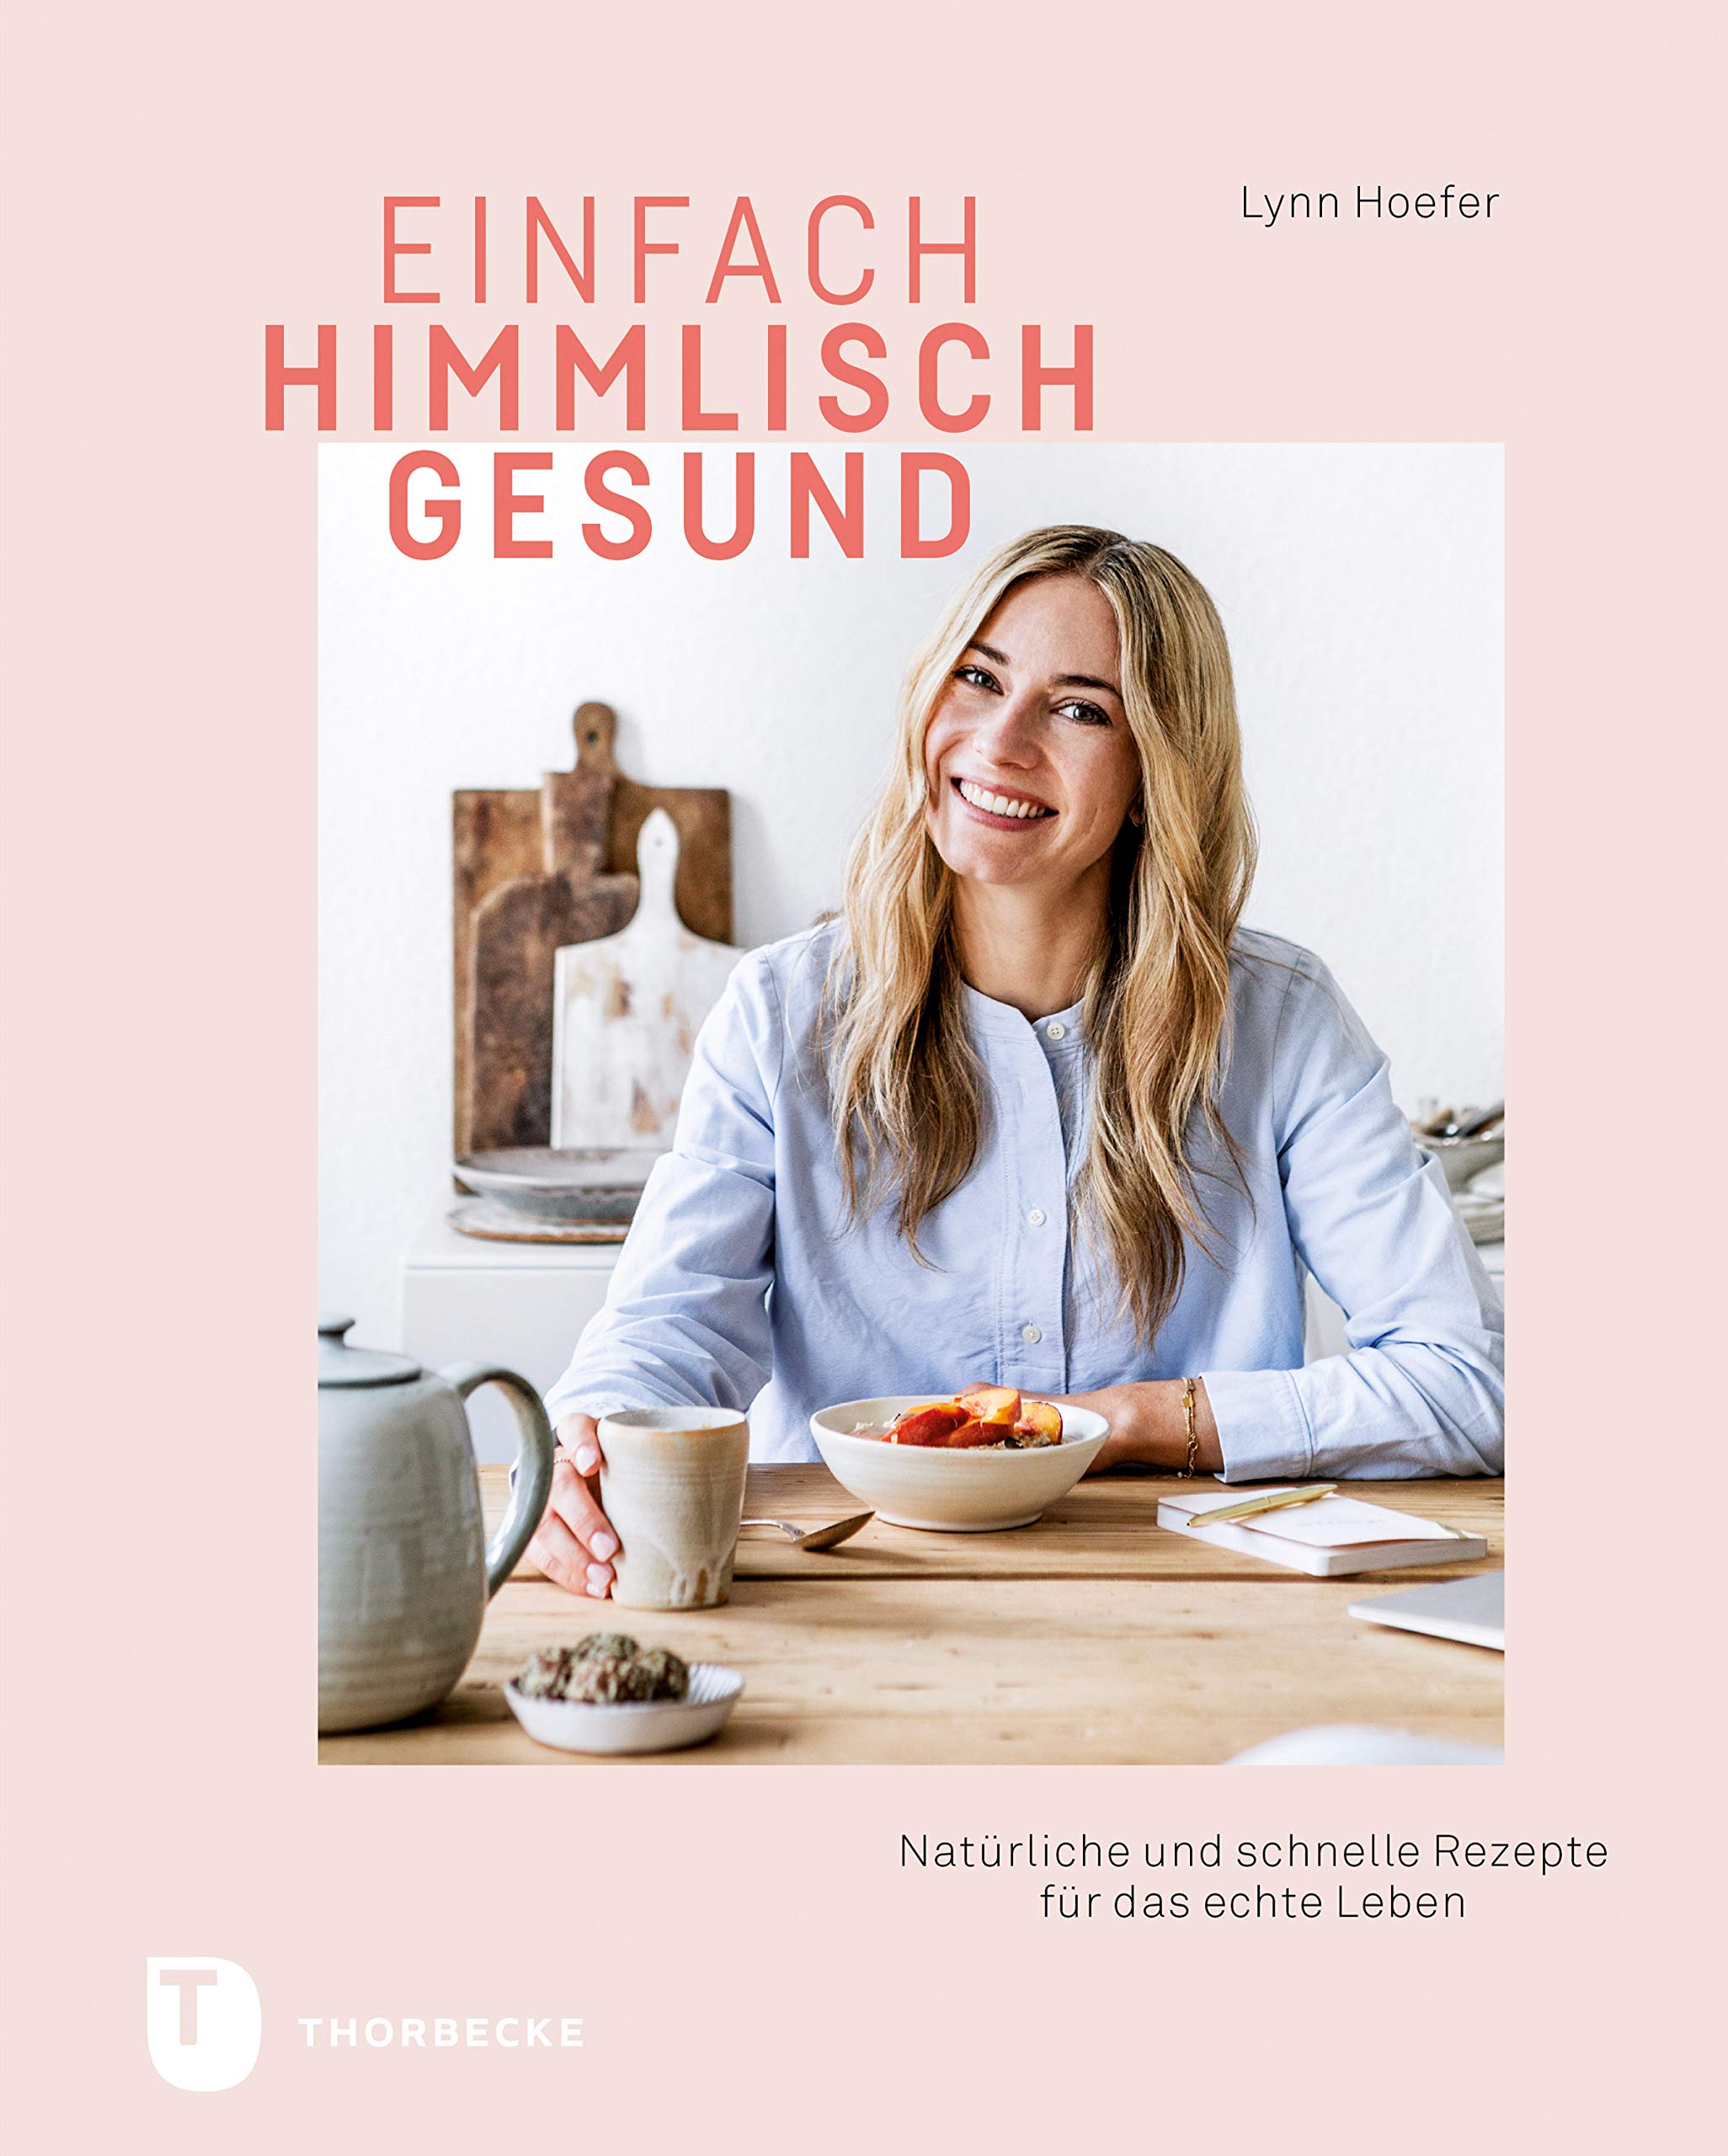 Einfach himmlisch gesund: Natürliche und schnelle Rezepte für das echte Leben (German Edition)